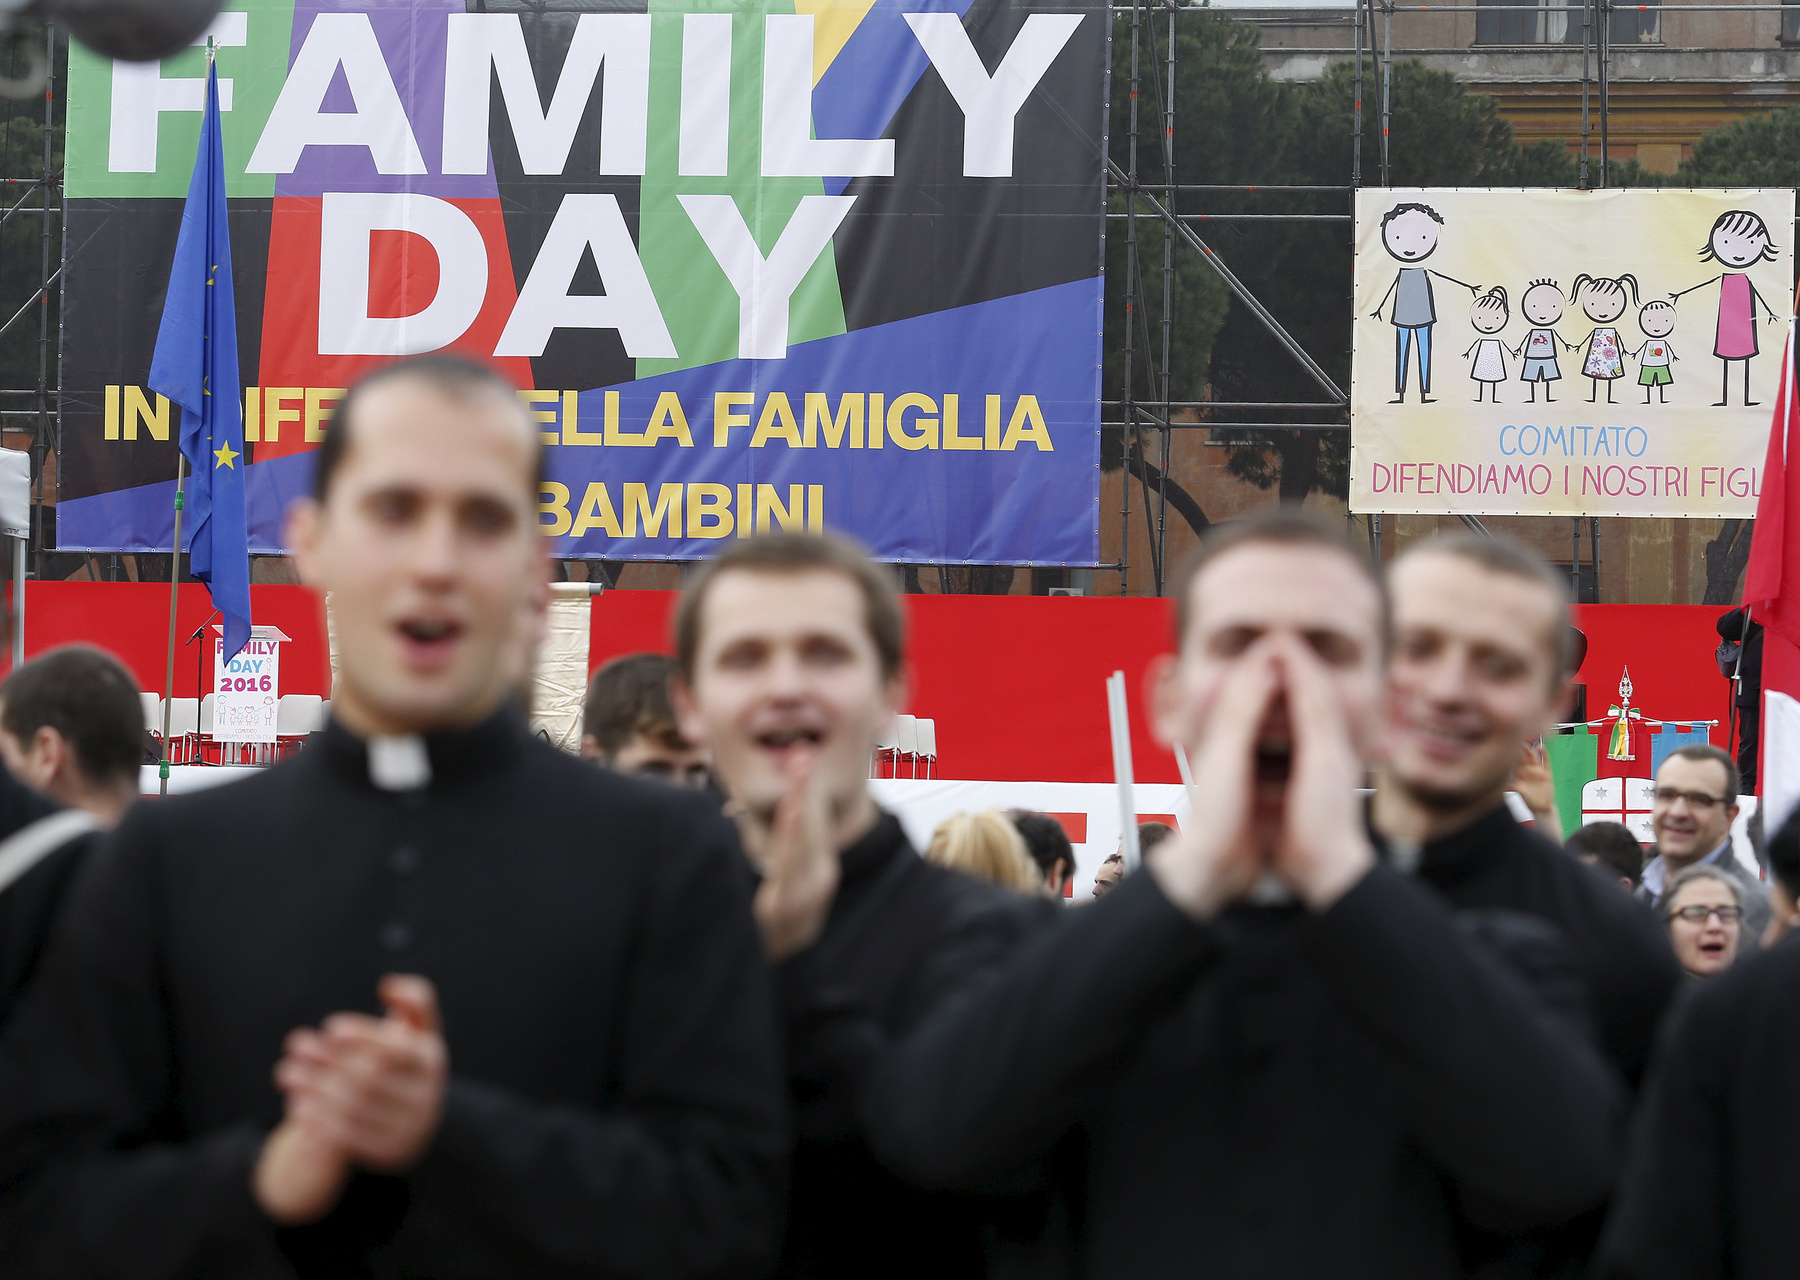 A felmérések szerint a lakosság megosztott az élettársi kapcsolatok bejegyzésének kérdésében, ugyanakkor erőteljesen ellenzi az örökbefogadás jogát. Az Itáliában befolyásos római katolikus egyház többször is emlékeztetett általában a család központi szerepére a társadalomban, de szombati tüntetés ügyében nem foglalt állást. A Family Day mozgalom most harmadik alkalommal szólította tüntetésre híveit.